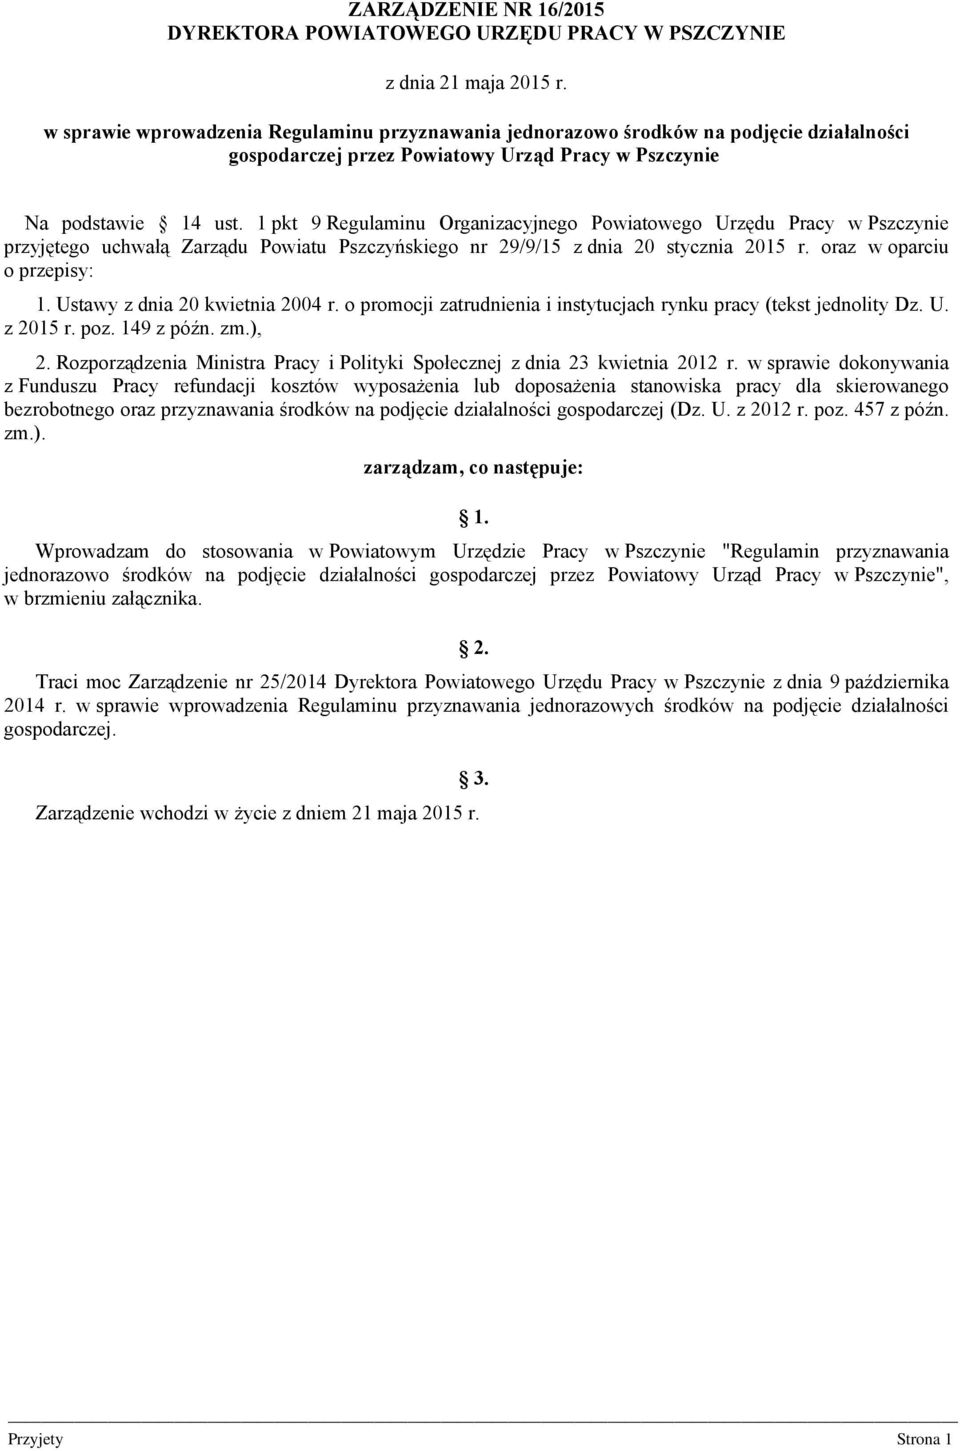 1 pkt 9 Regulaminu Organizacyjnego Powiatowego Urzędu Pracy w Pszczynie przyjętego uchwałą Zarządu Powiatu Pszczyńskiego nr 29/9/15 z dnia 20 stycznia 2015 r. oraz w oparciu o przepisy: 1.